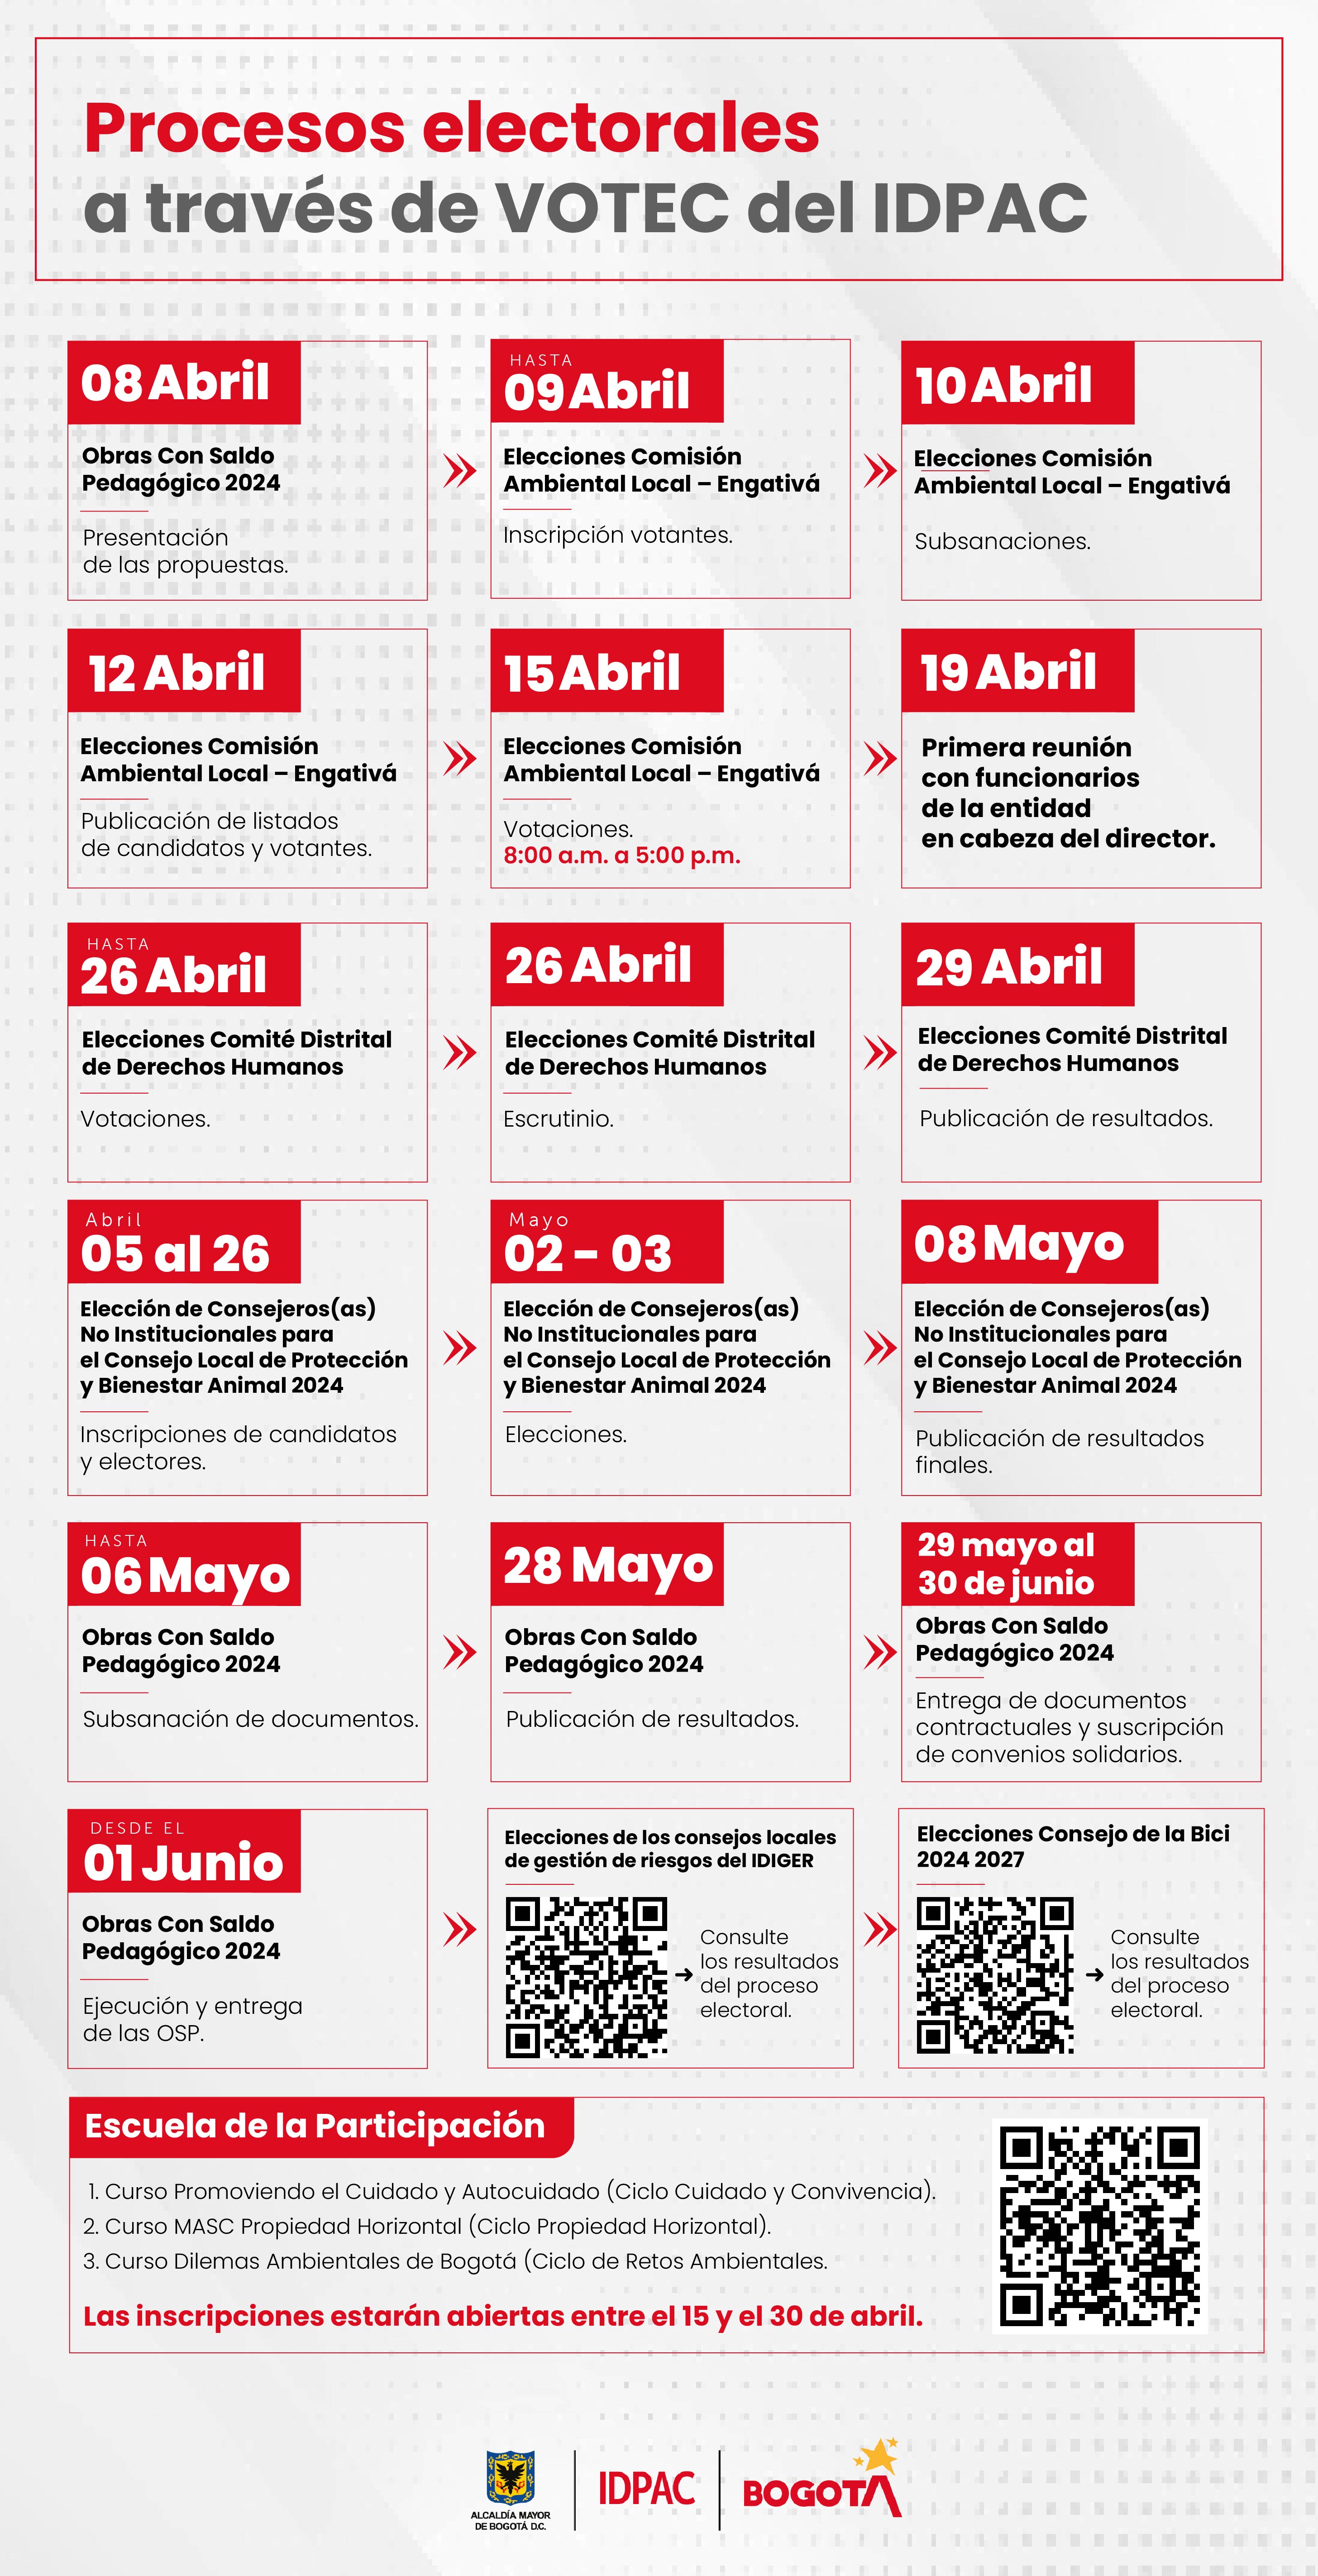 Calendario de actividades y eventos /IDPAC